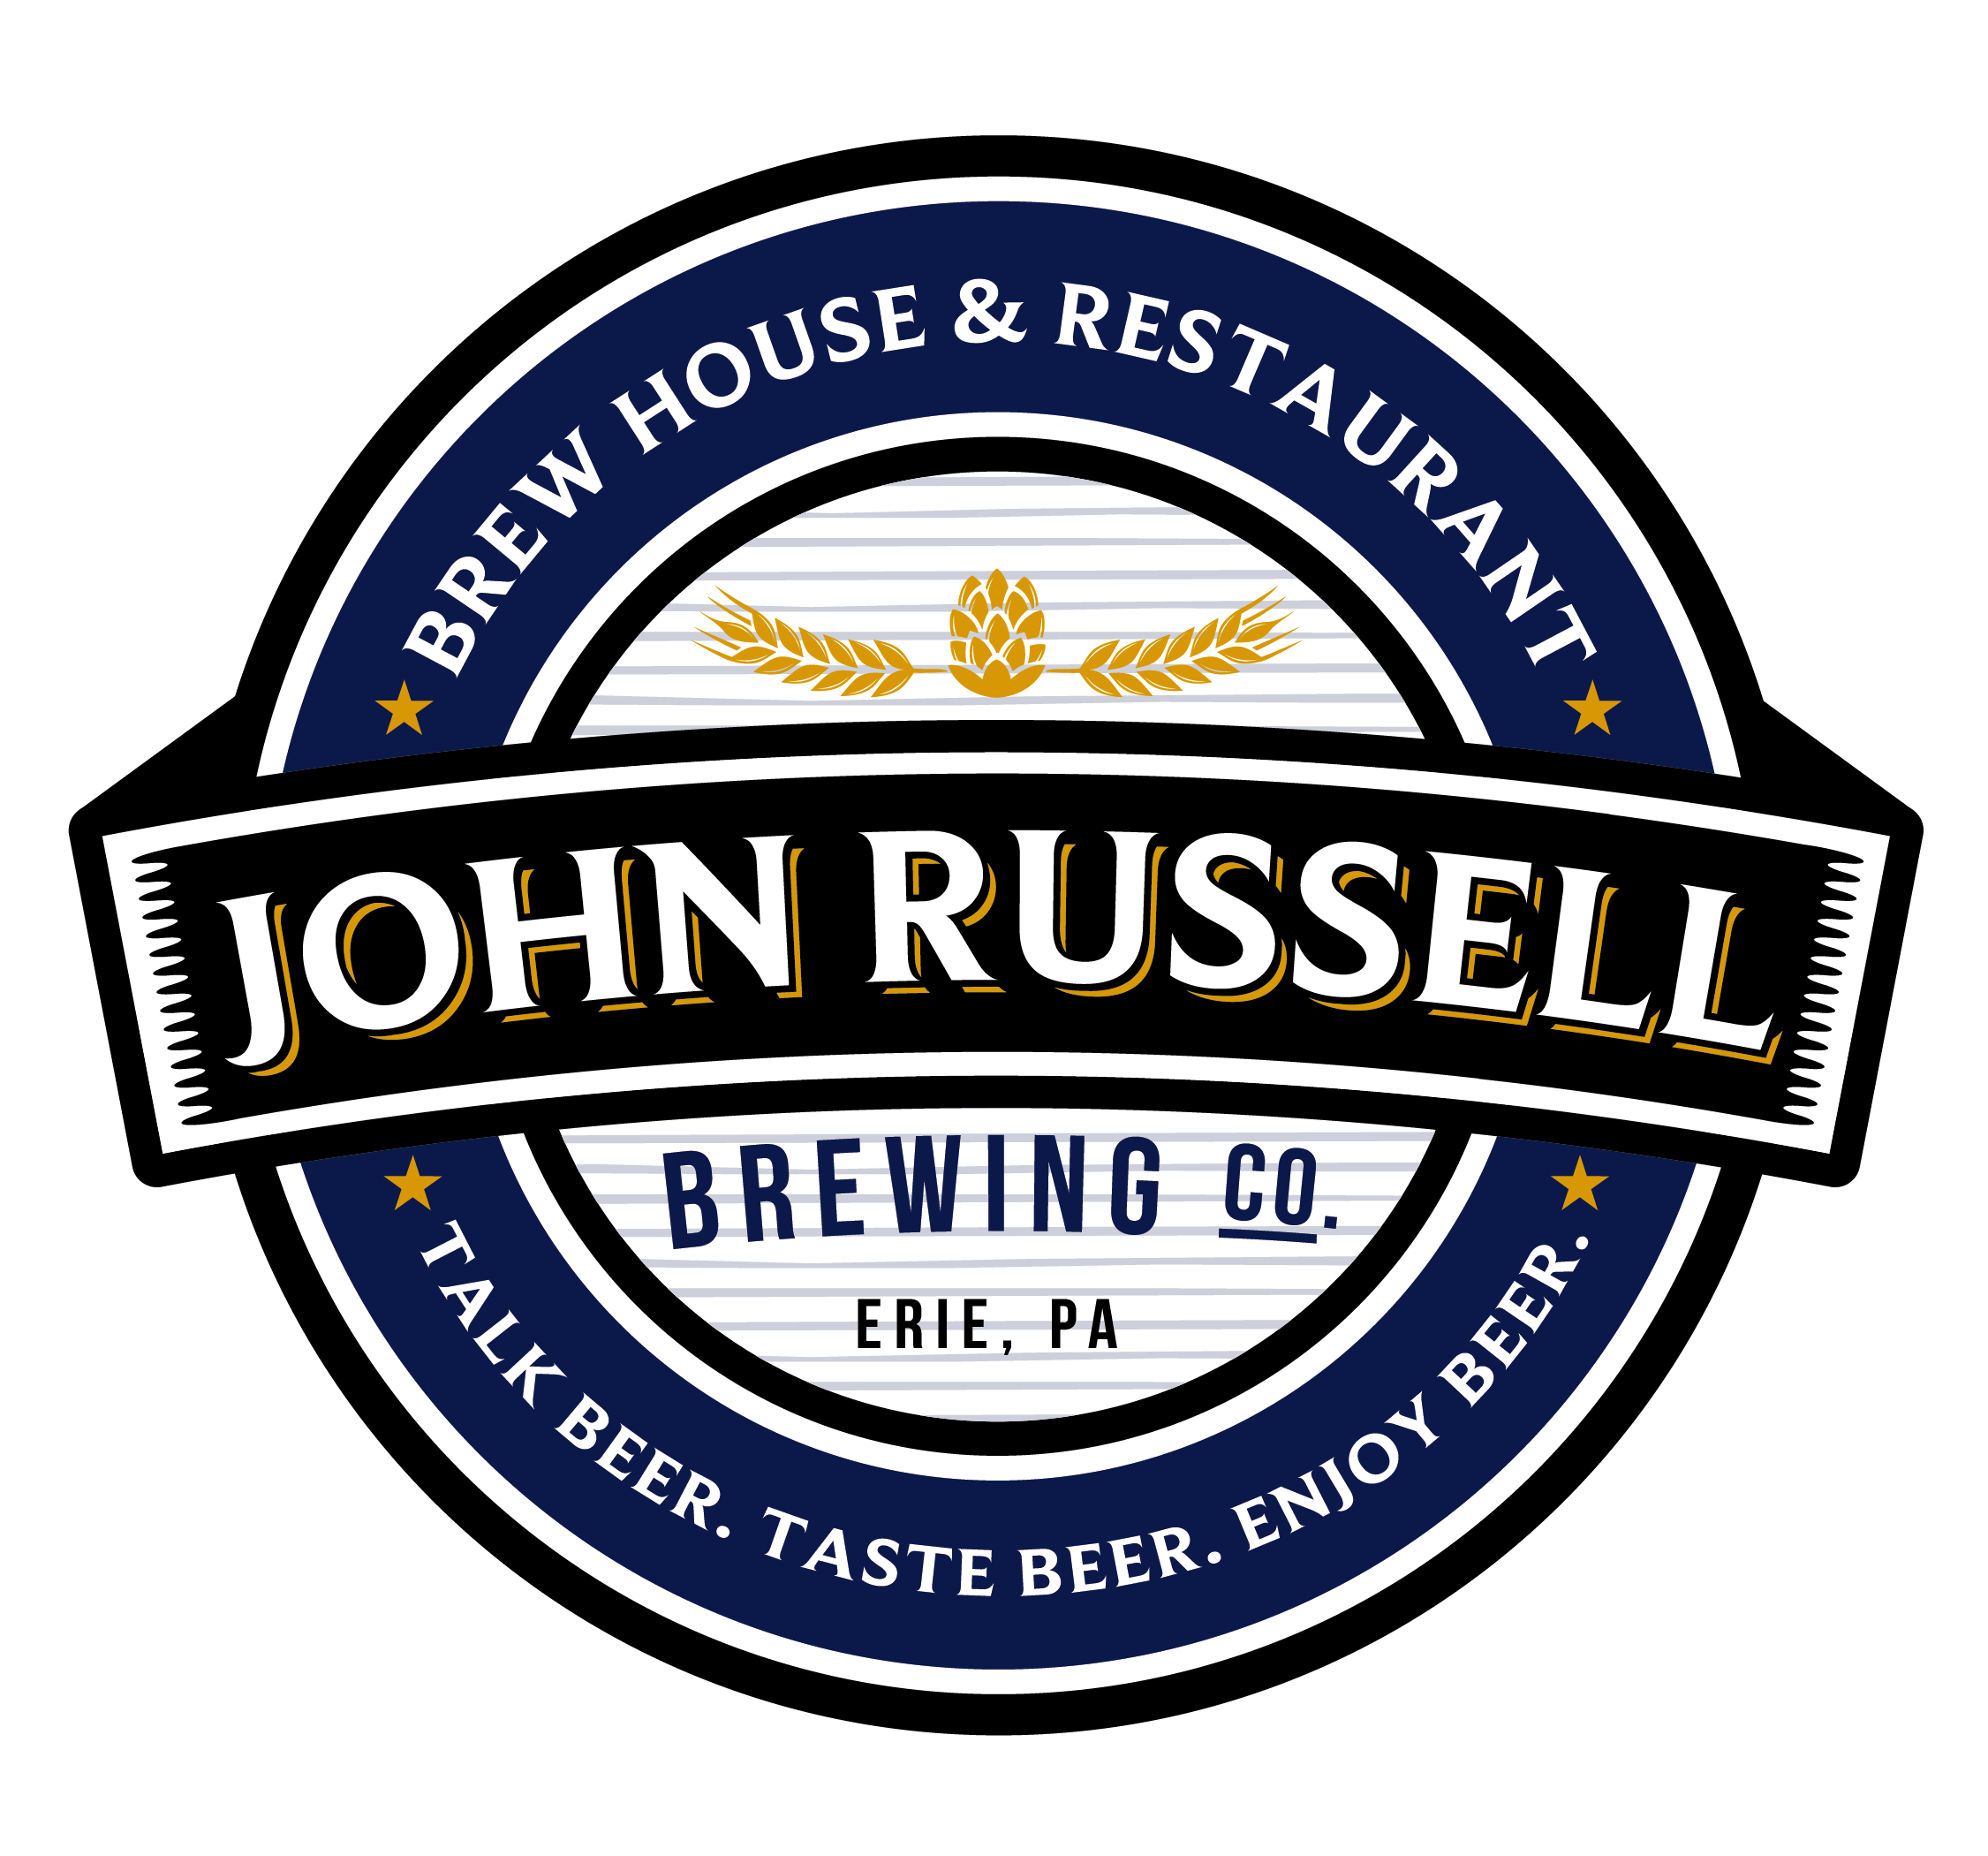 John Russell Brewing Co Brew House Restaurant logo final hr